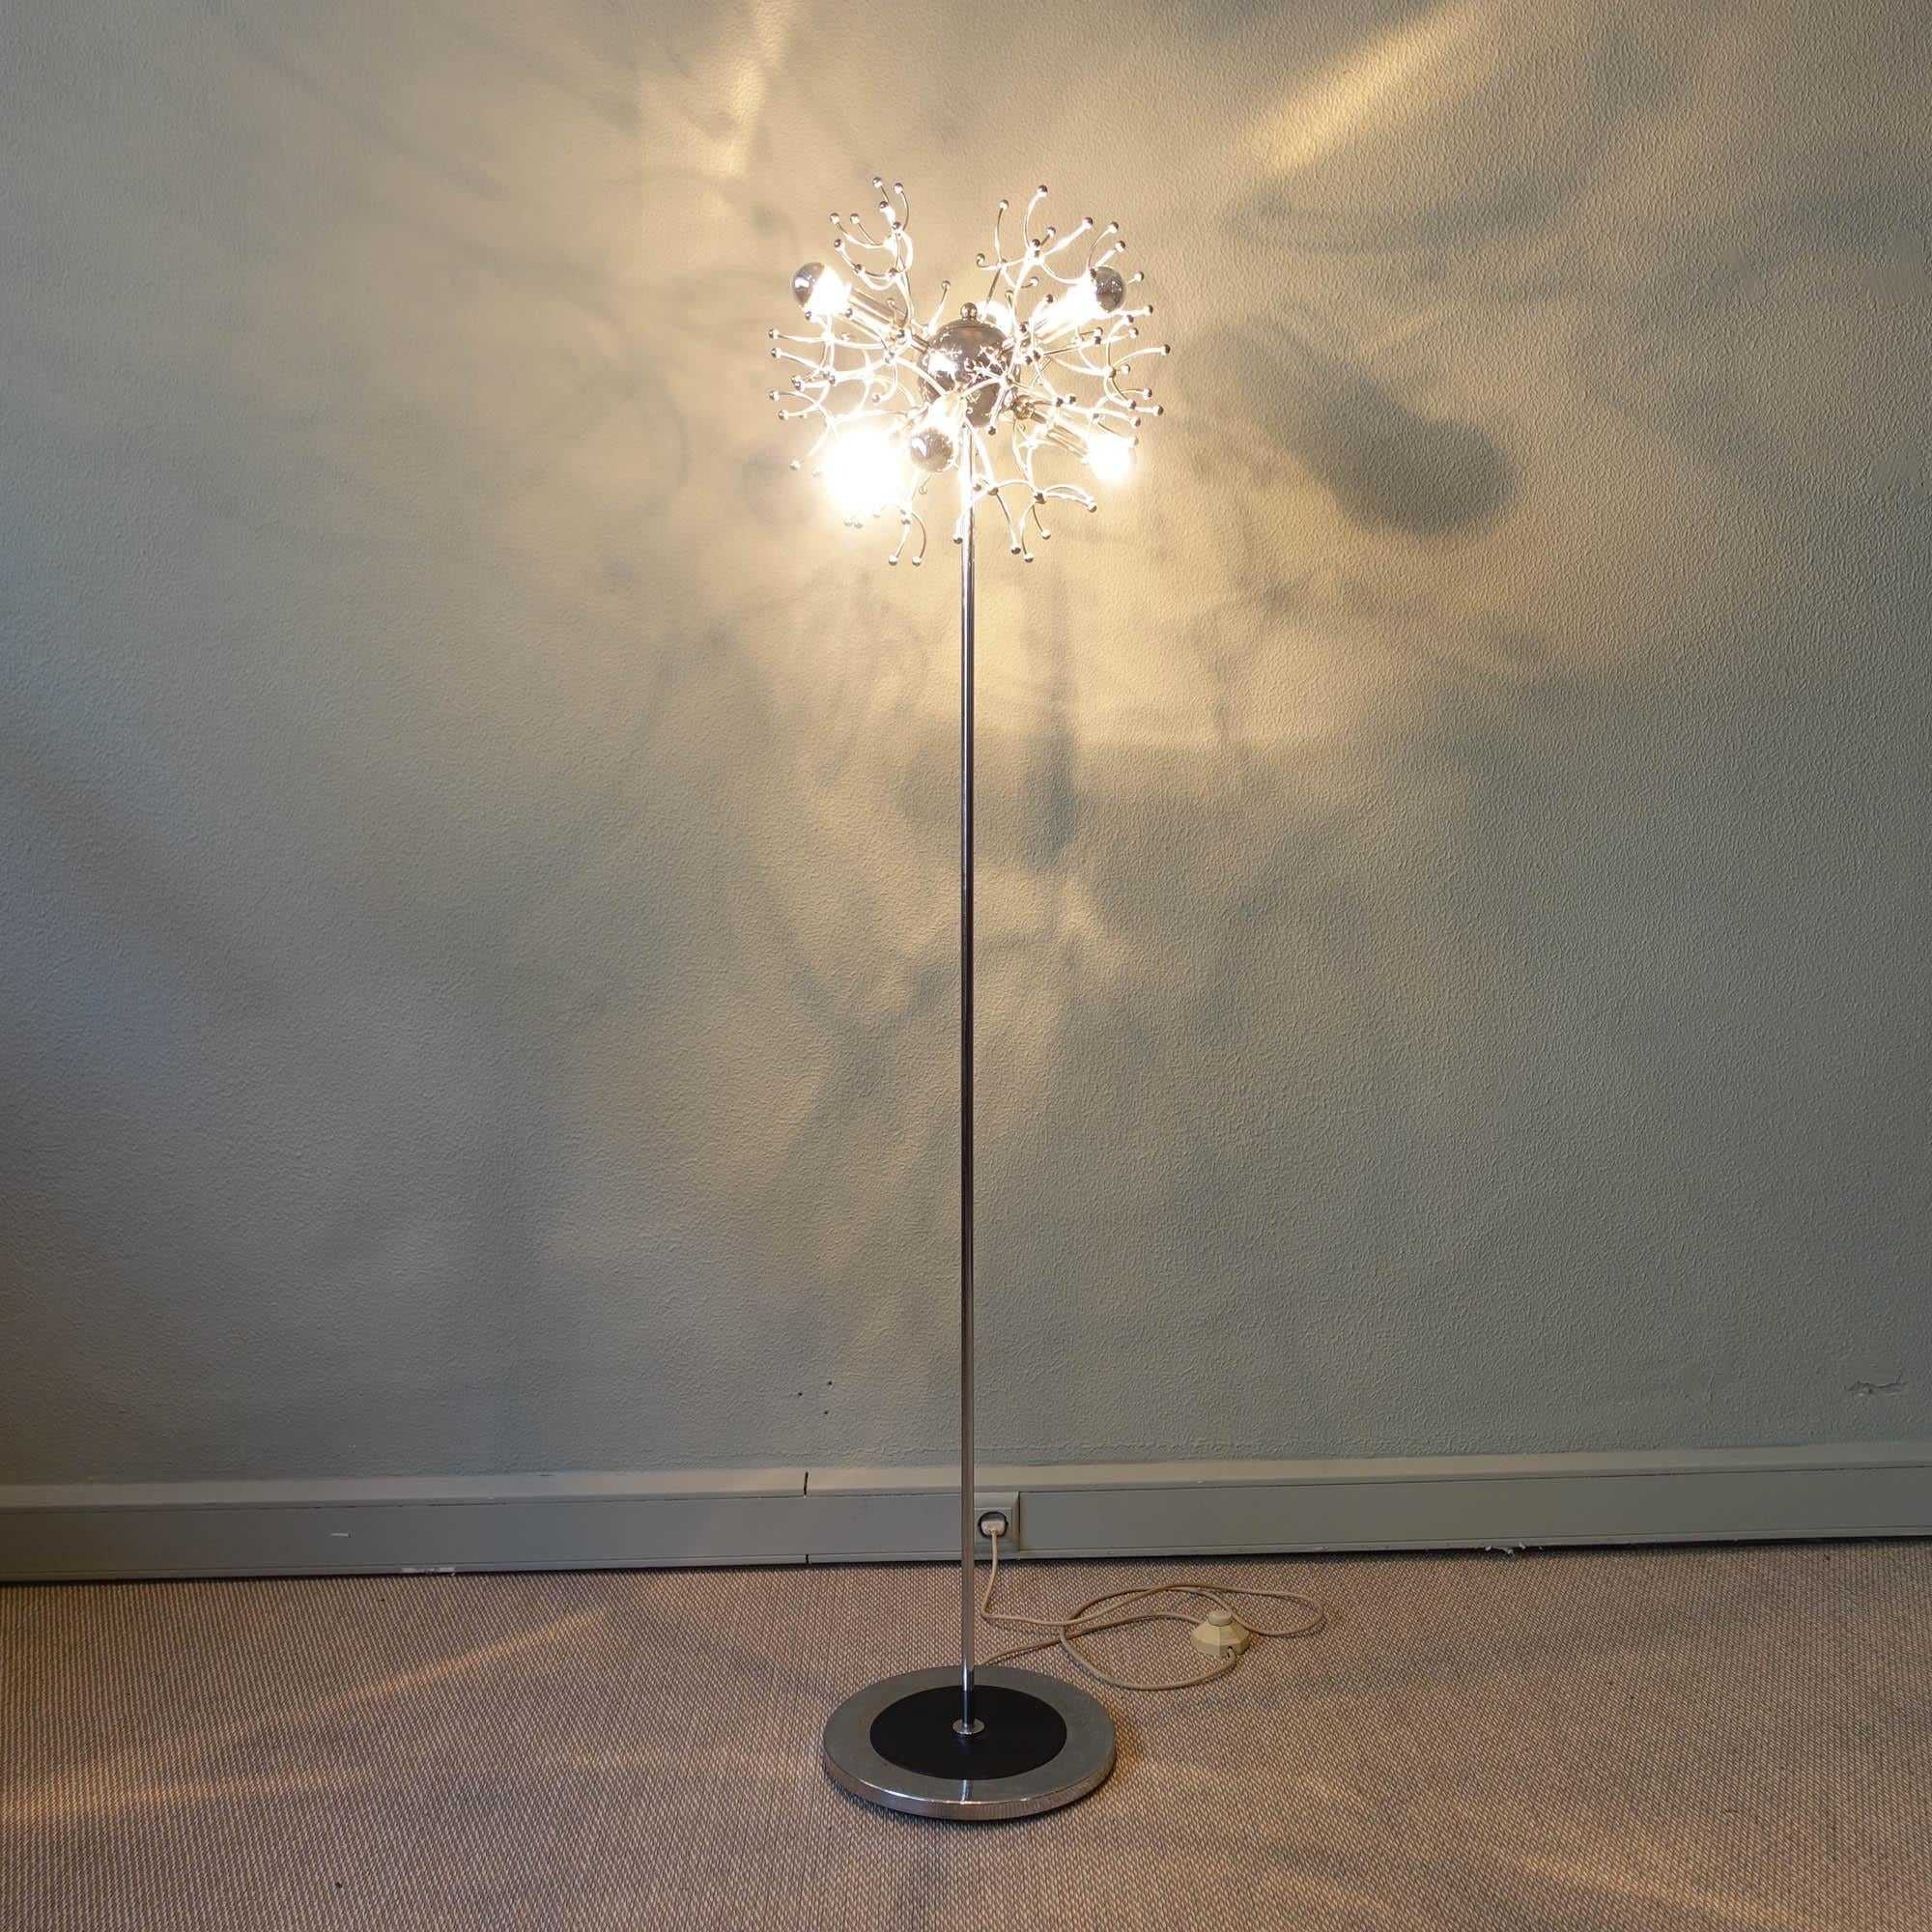 Ce lampadaire a été conçu par Gaetano Sciolari et produit par Sciolari Illuminazione Arlum Srl dans les années 1970. Il comporte six lumières à différentes hauteurs et positions. La lampe est faite de métal chromé, de tiges chromées, de tiges